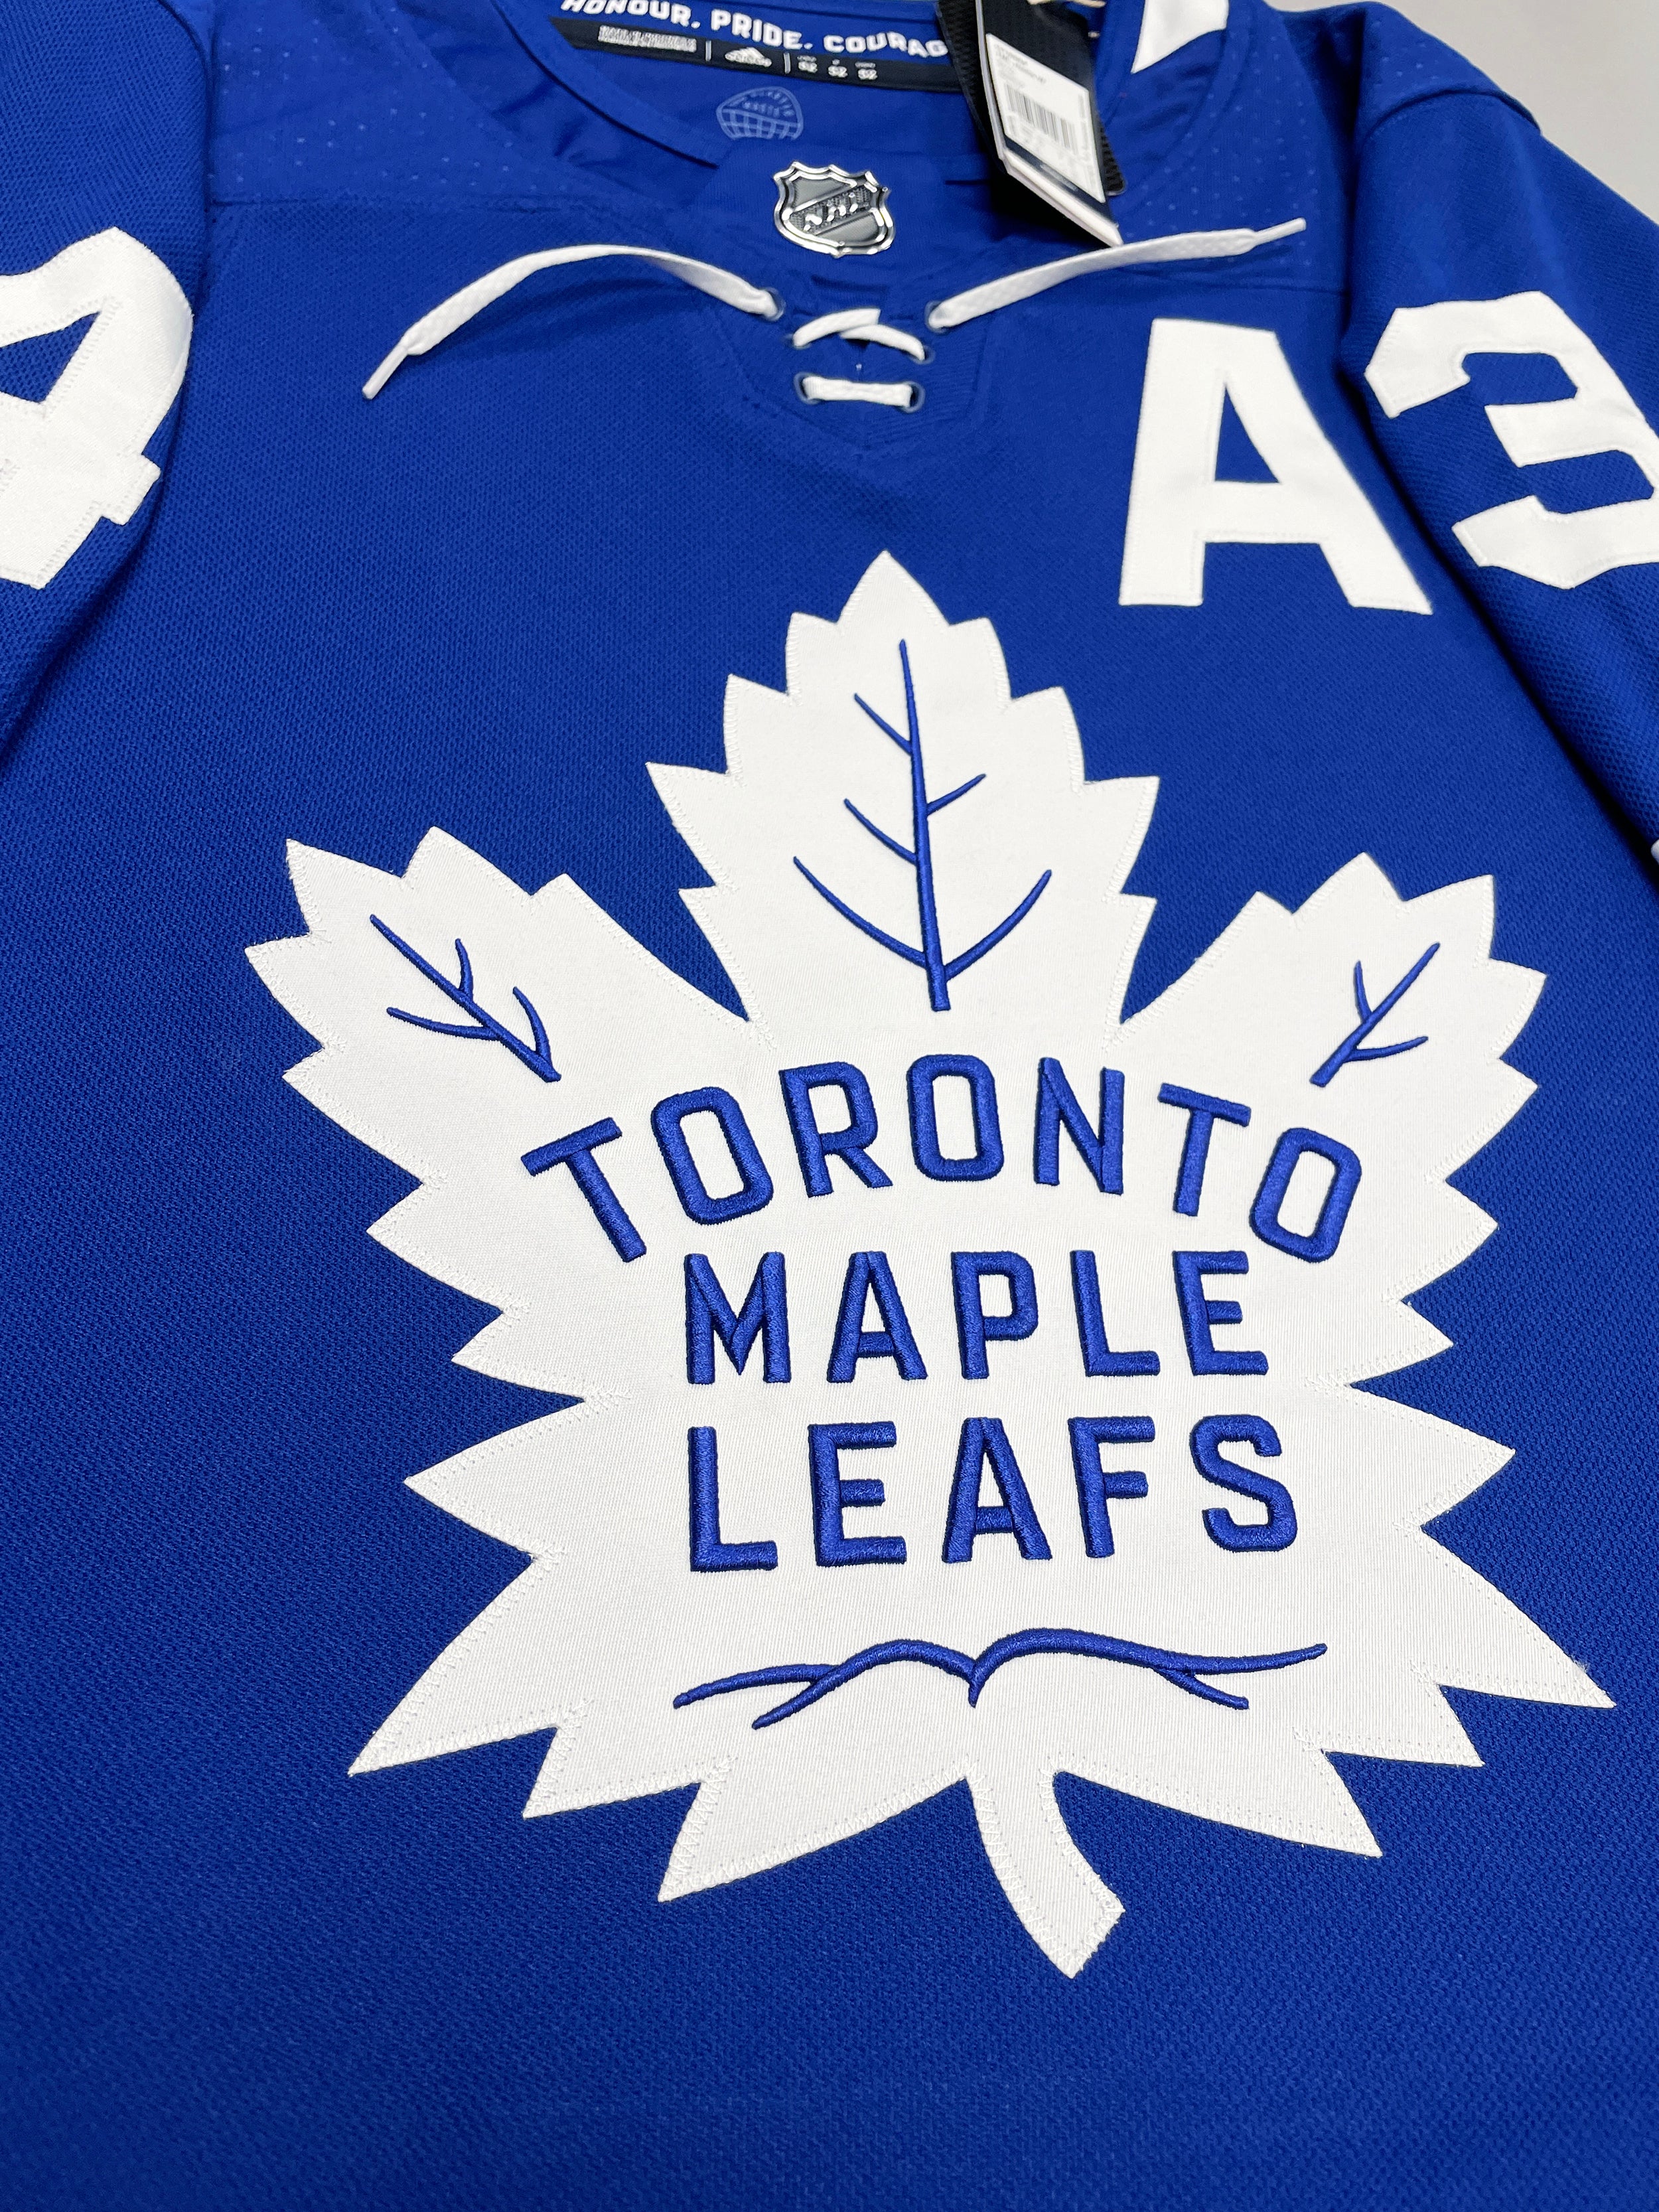 Toronto Maple Leafs Gear, Jerseys, Store, Pro Shop, Hockey Apparel